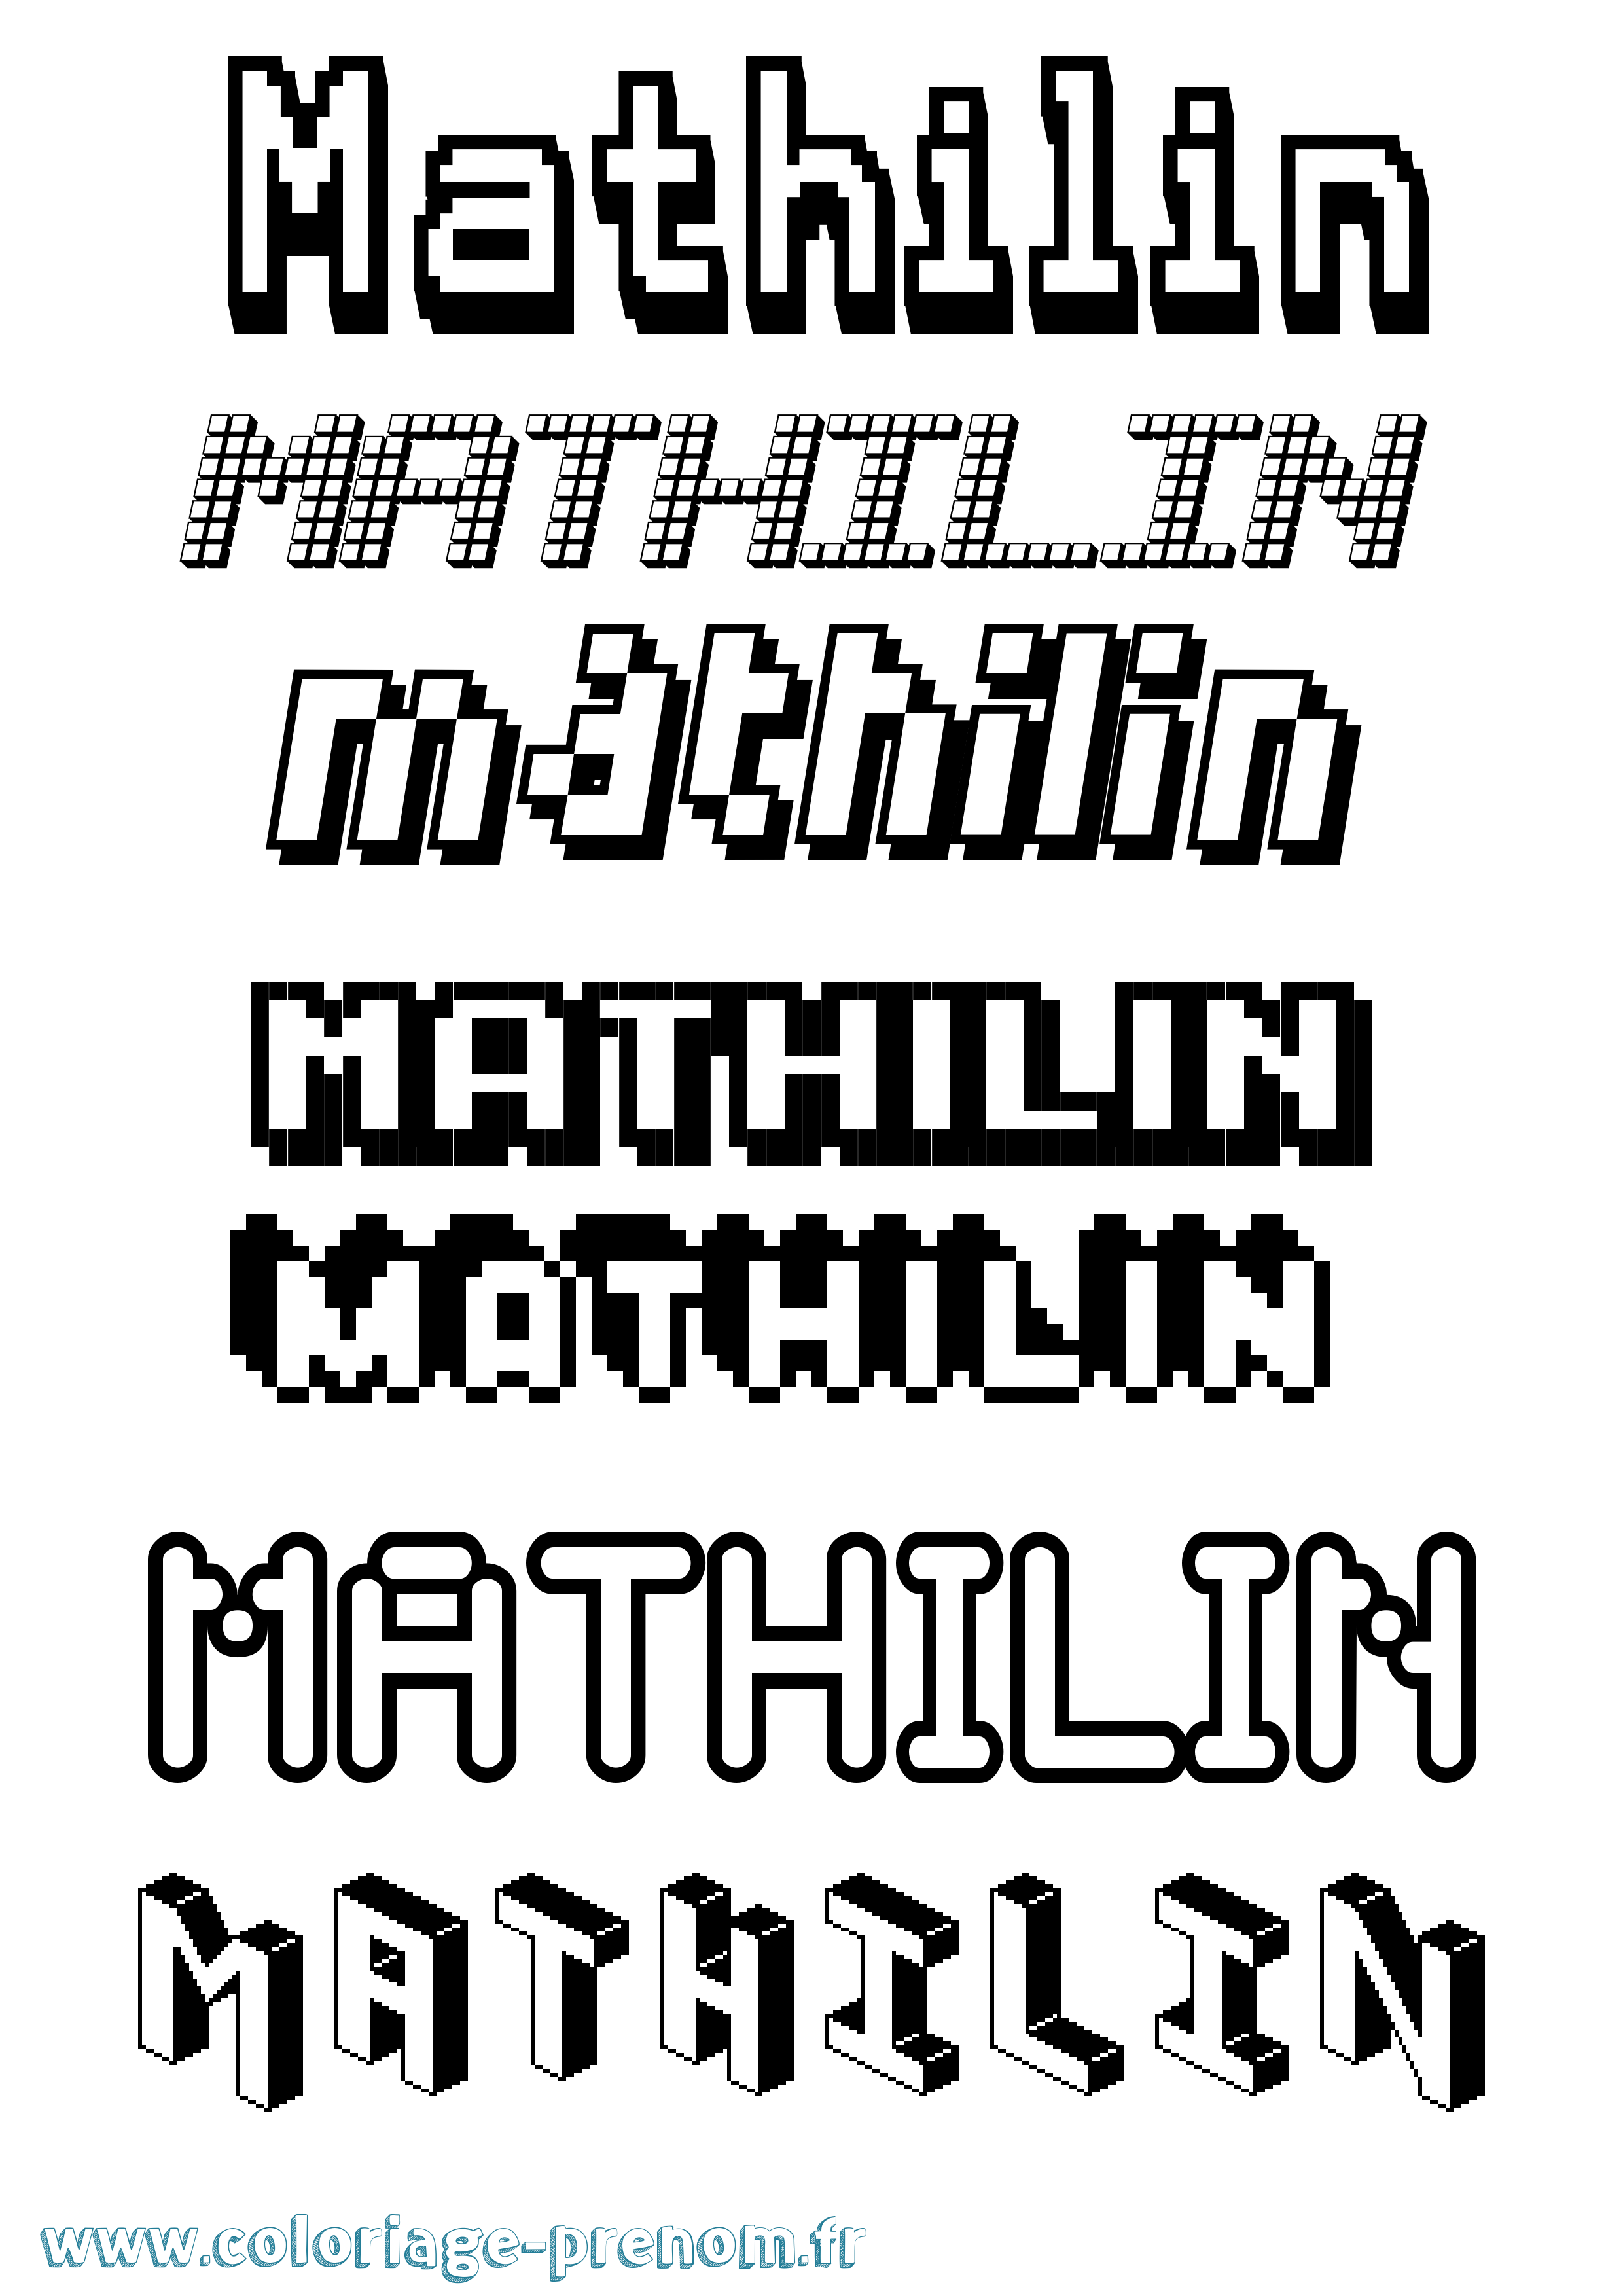 Coloriage prénom Mathilin Pixel